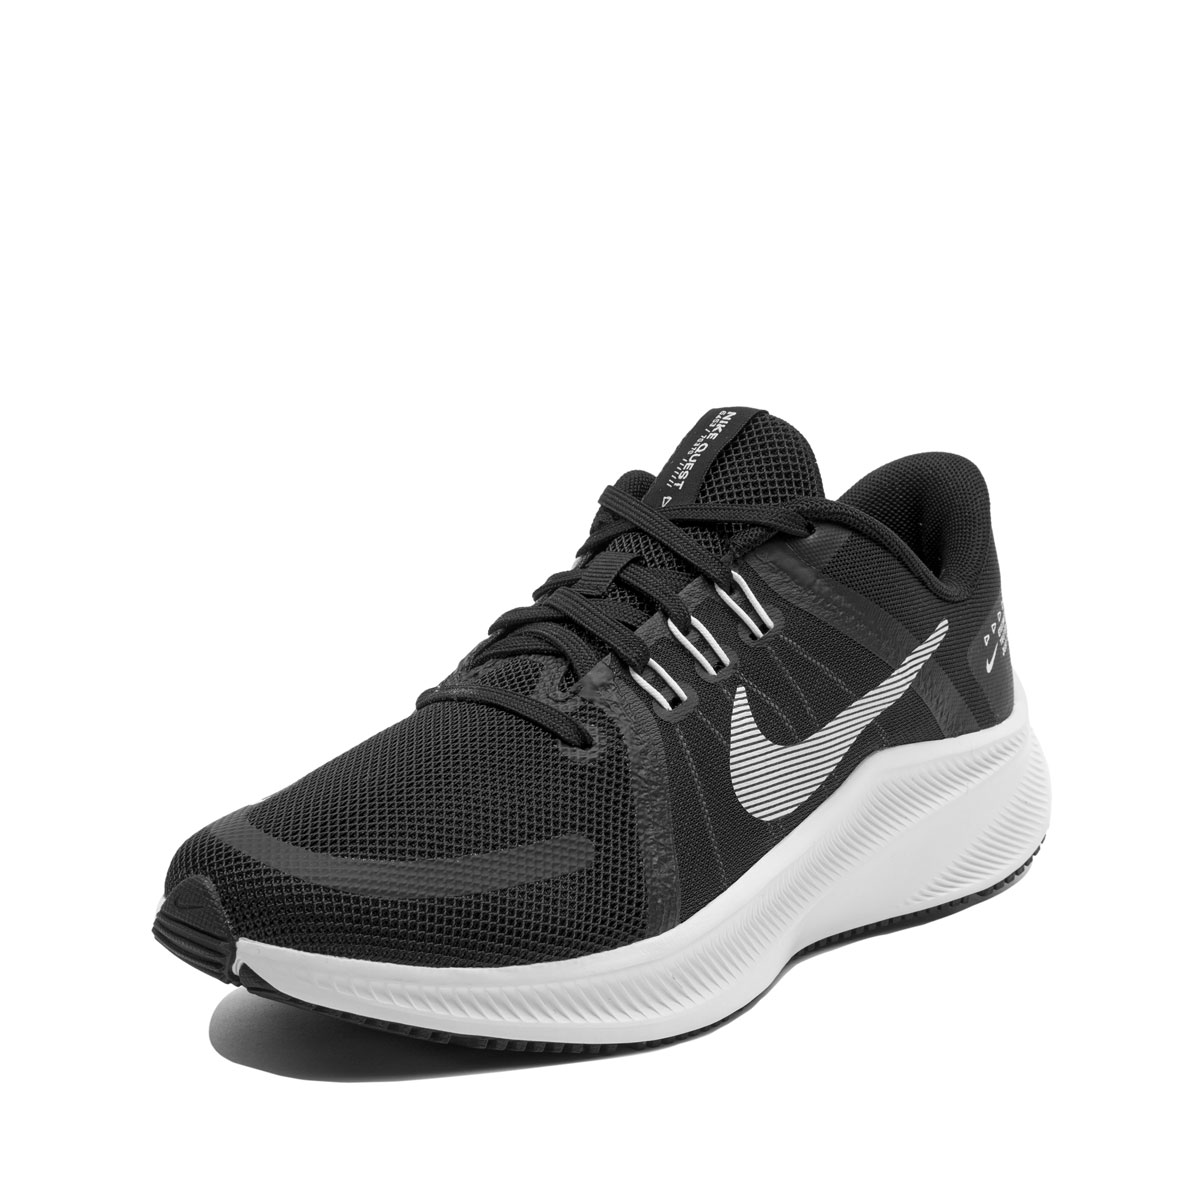 Nike Quest 4  DA1106-006